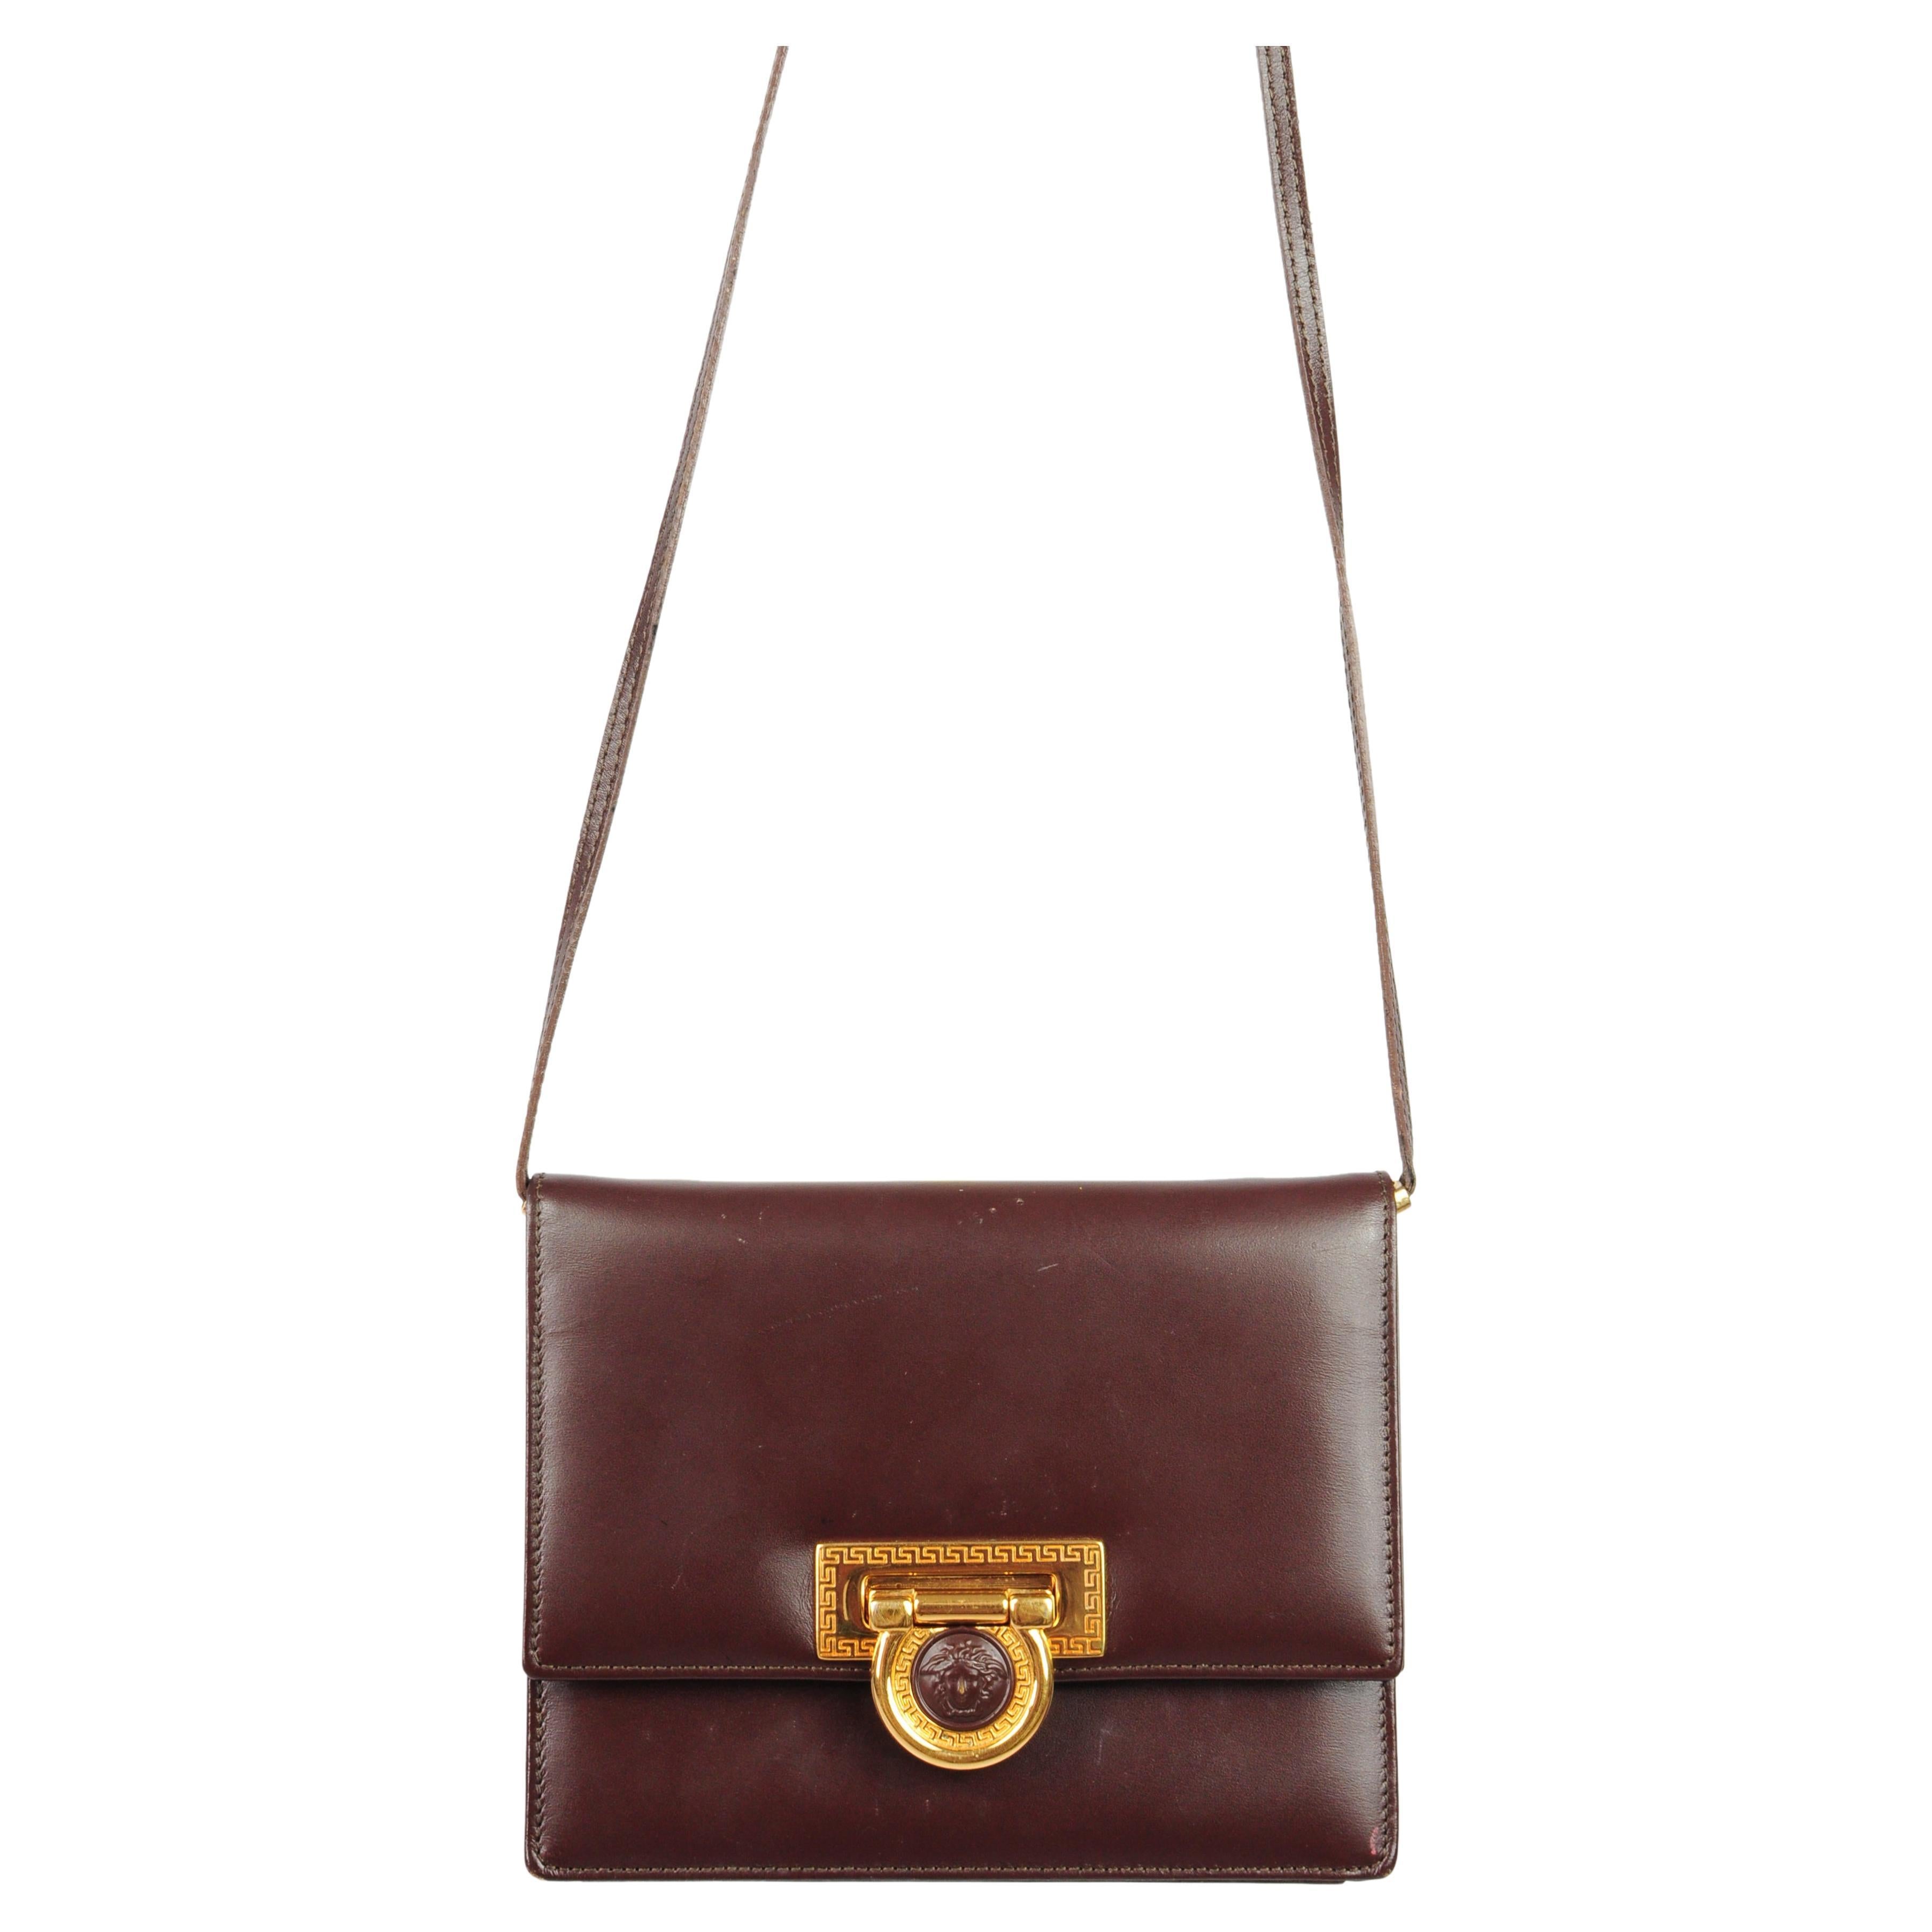 Mini sac à bandoulière en cuir marron Méduse de Gianni Versace, années 1990